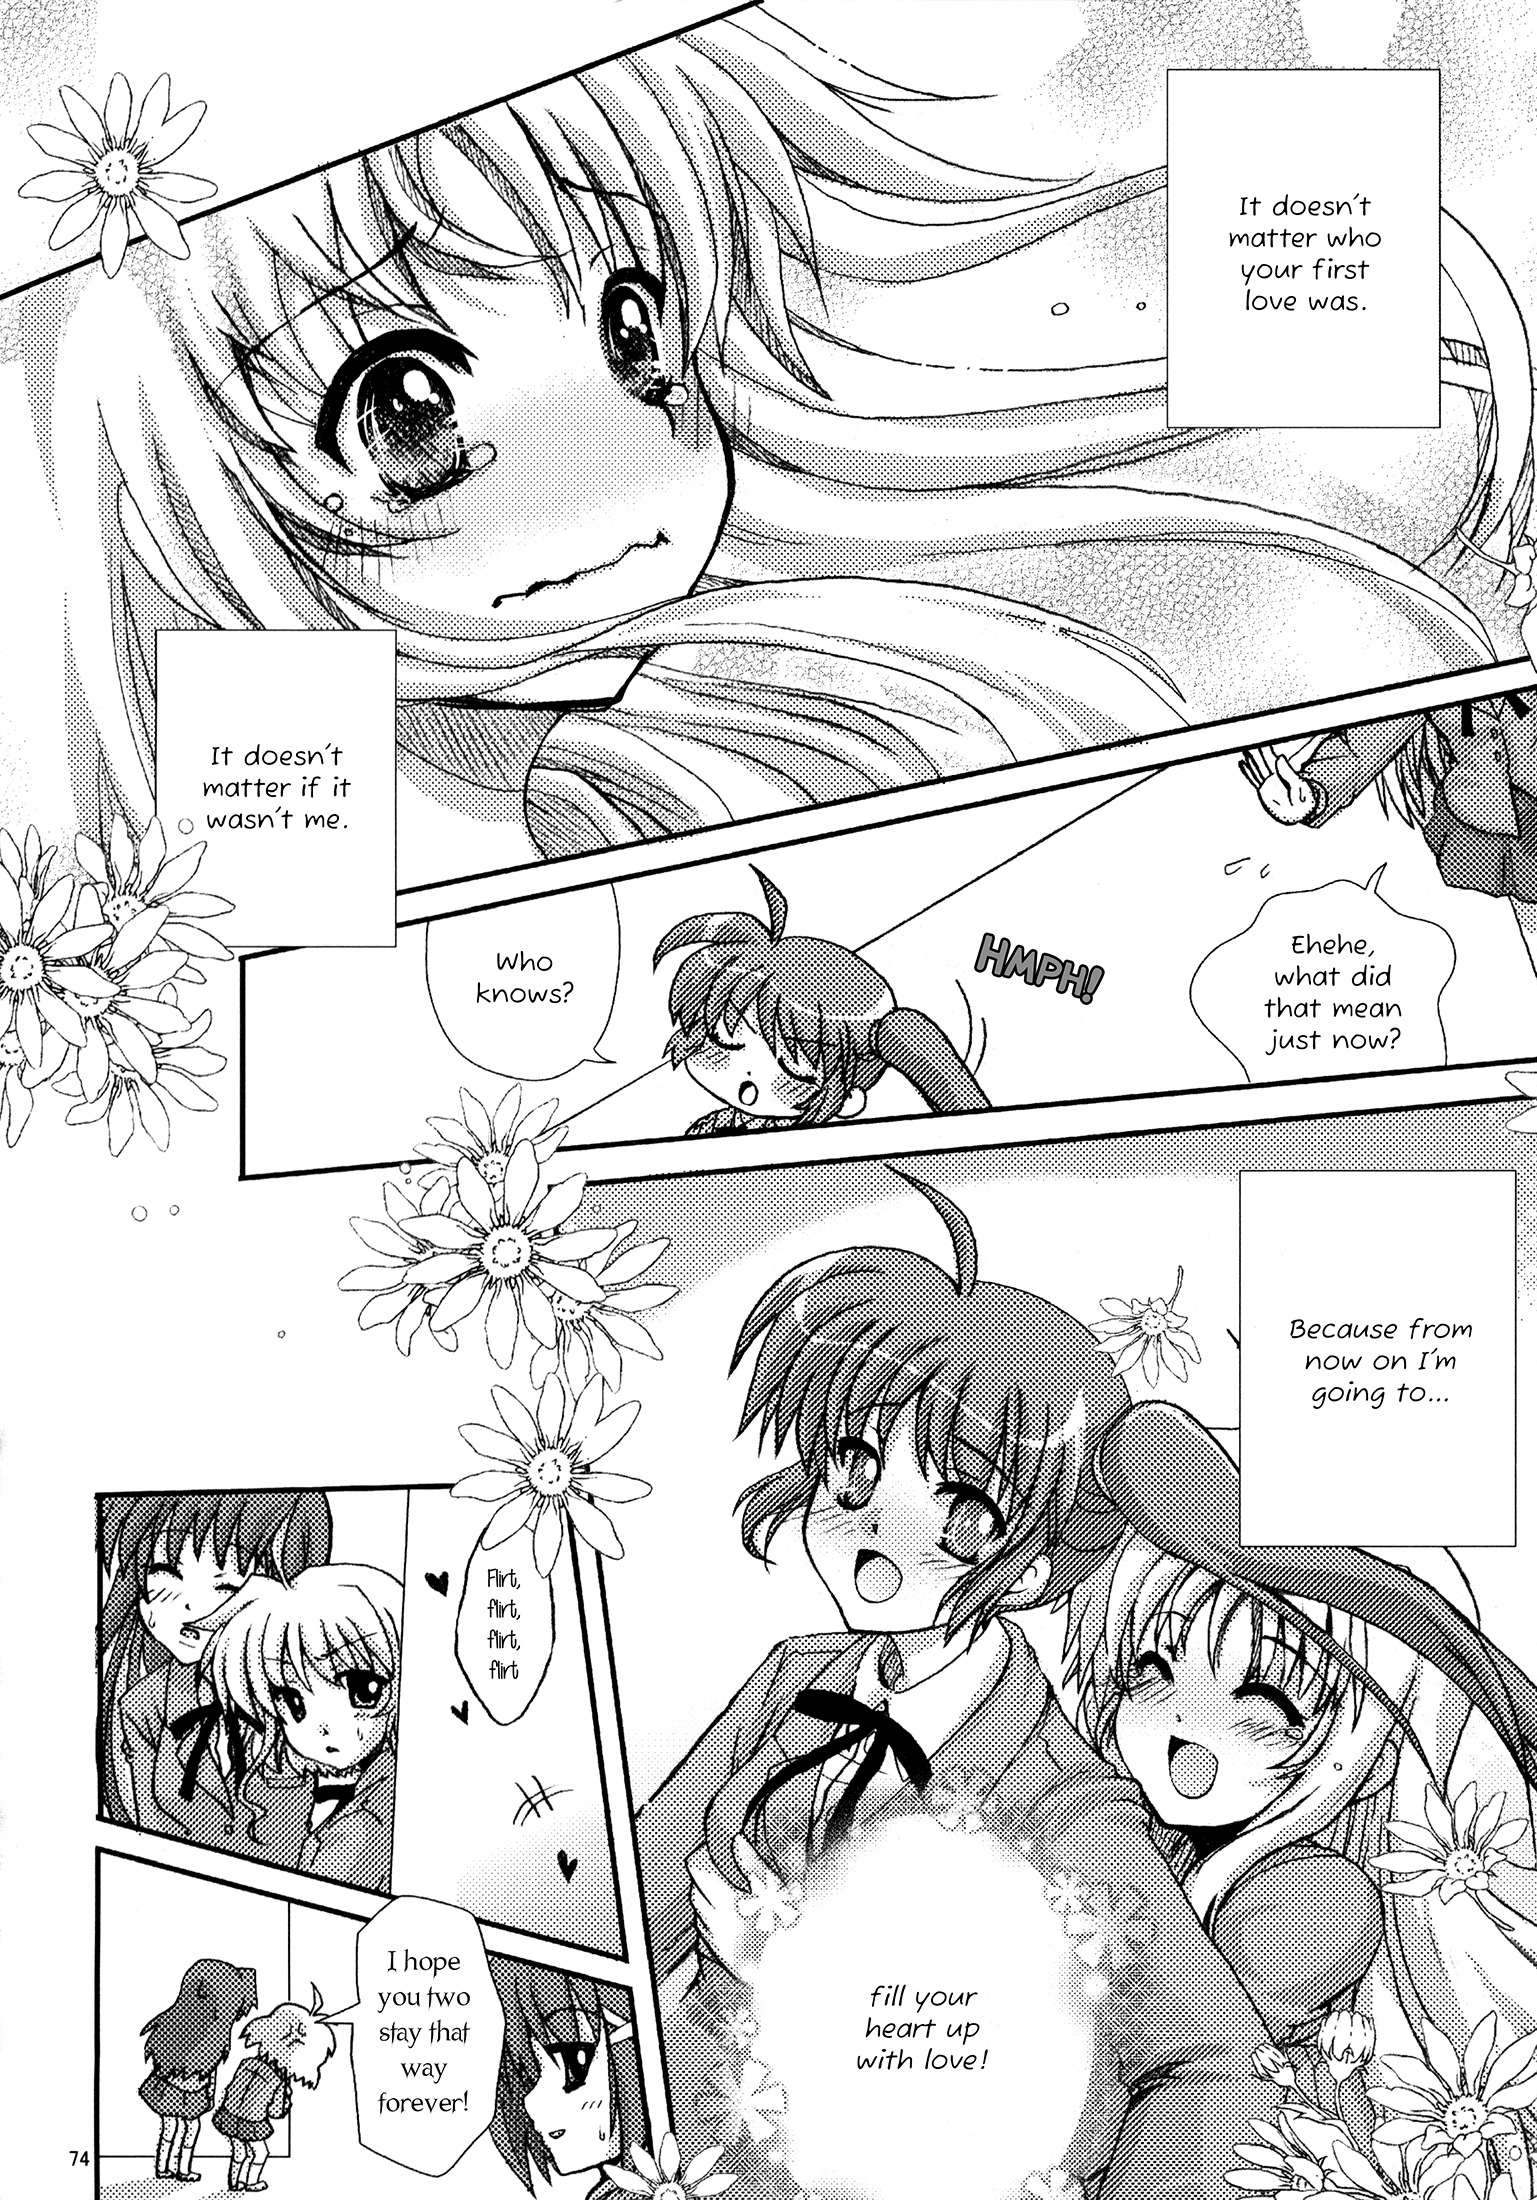 Mahou Shoujo Lyrical Nanoha - A Magical Girl’s First Love Story (Doujinshi) Oneshot